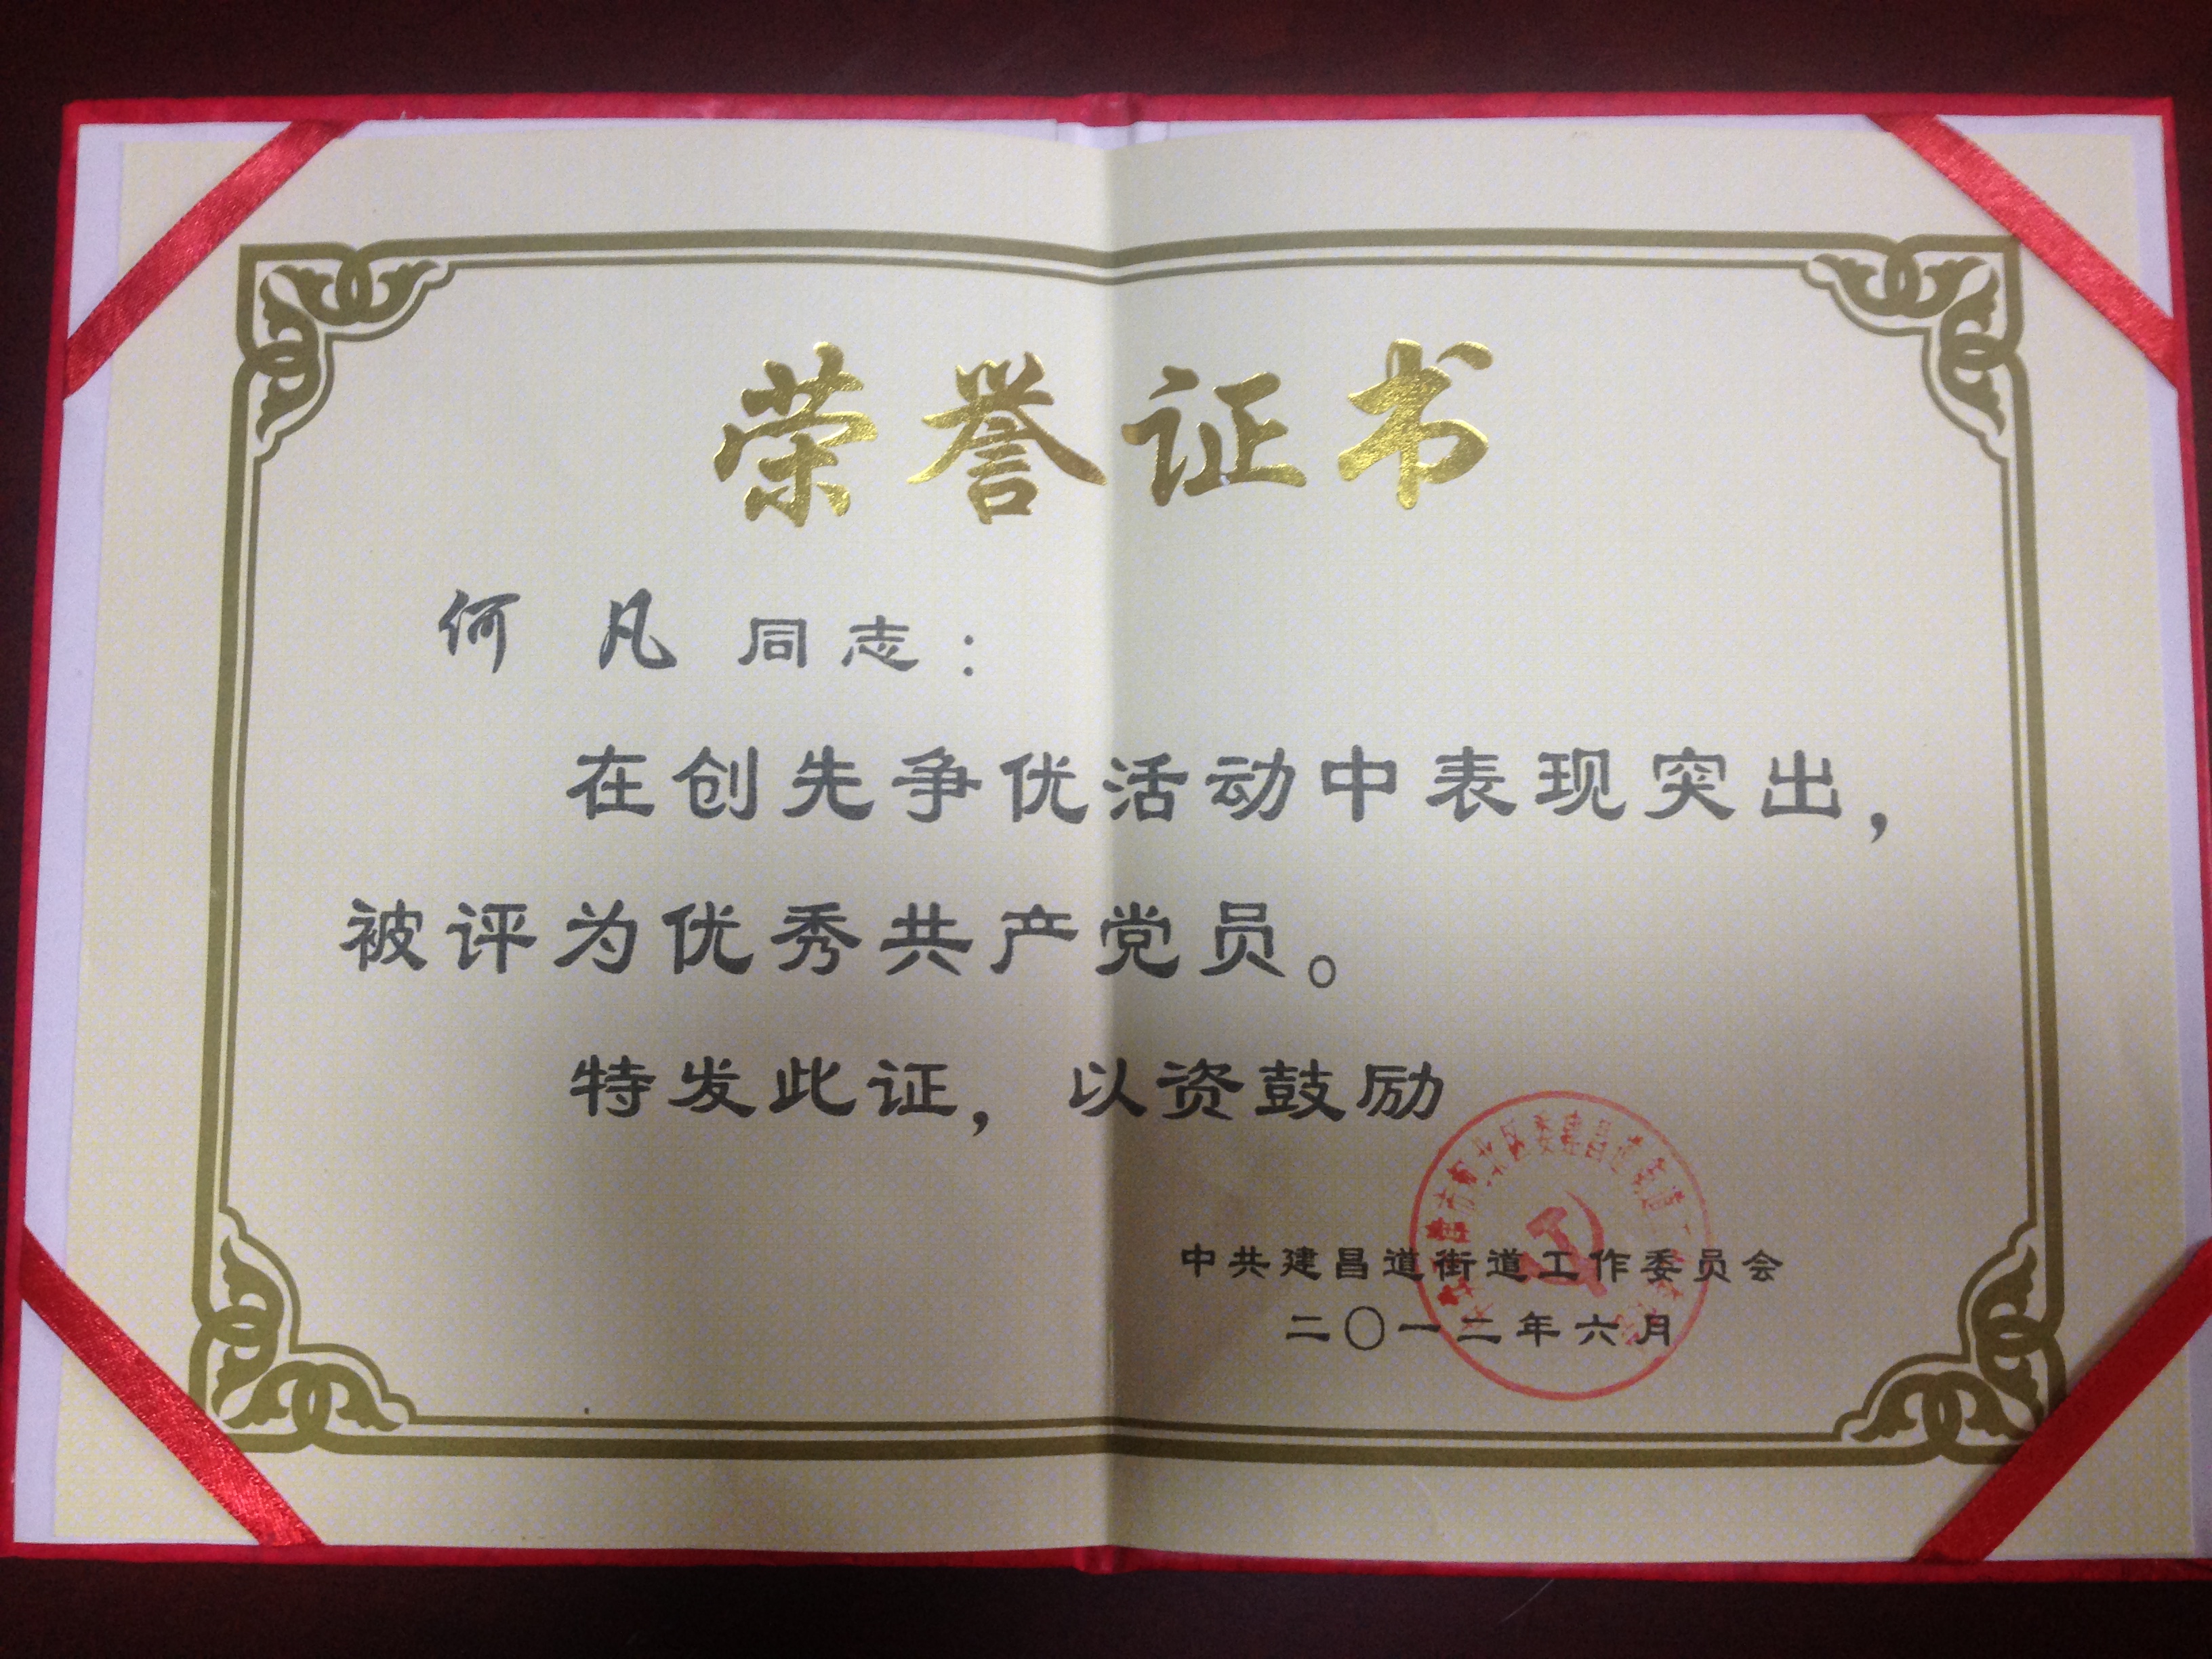 天津班车租赁公司及法人荣誉证书(图20)